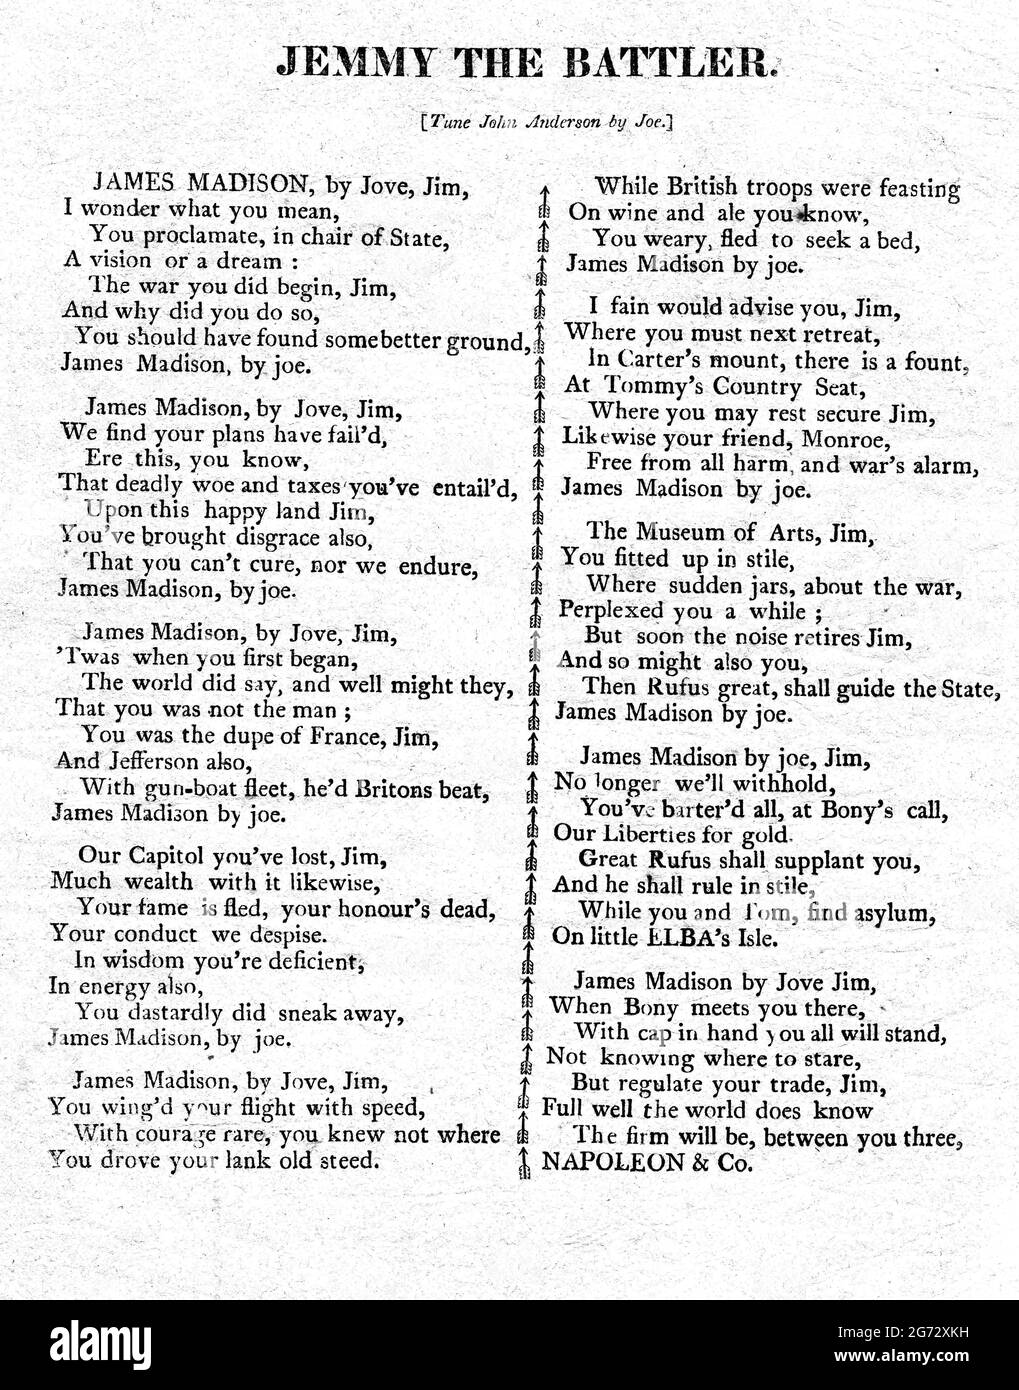 Jimmy the Battler, 1812 song sheet Stock Photo